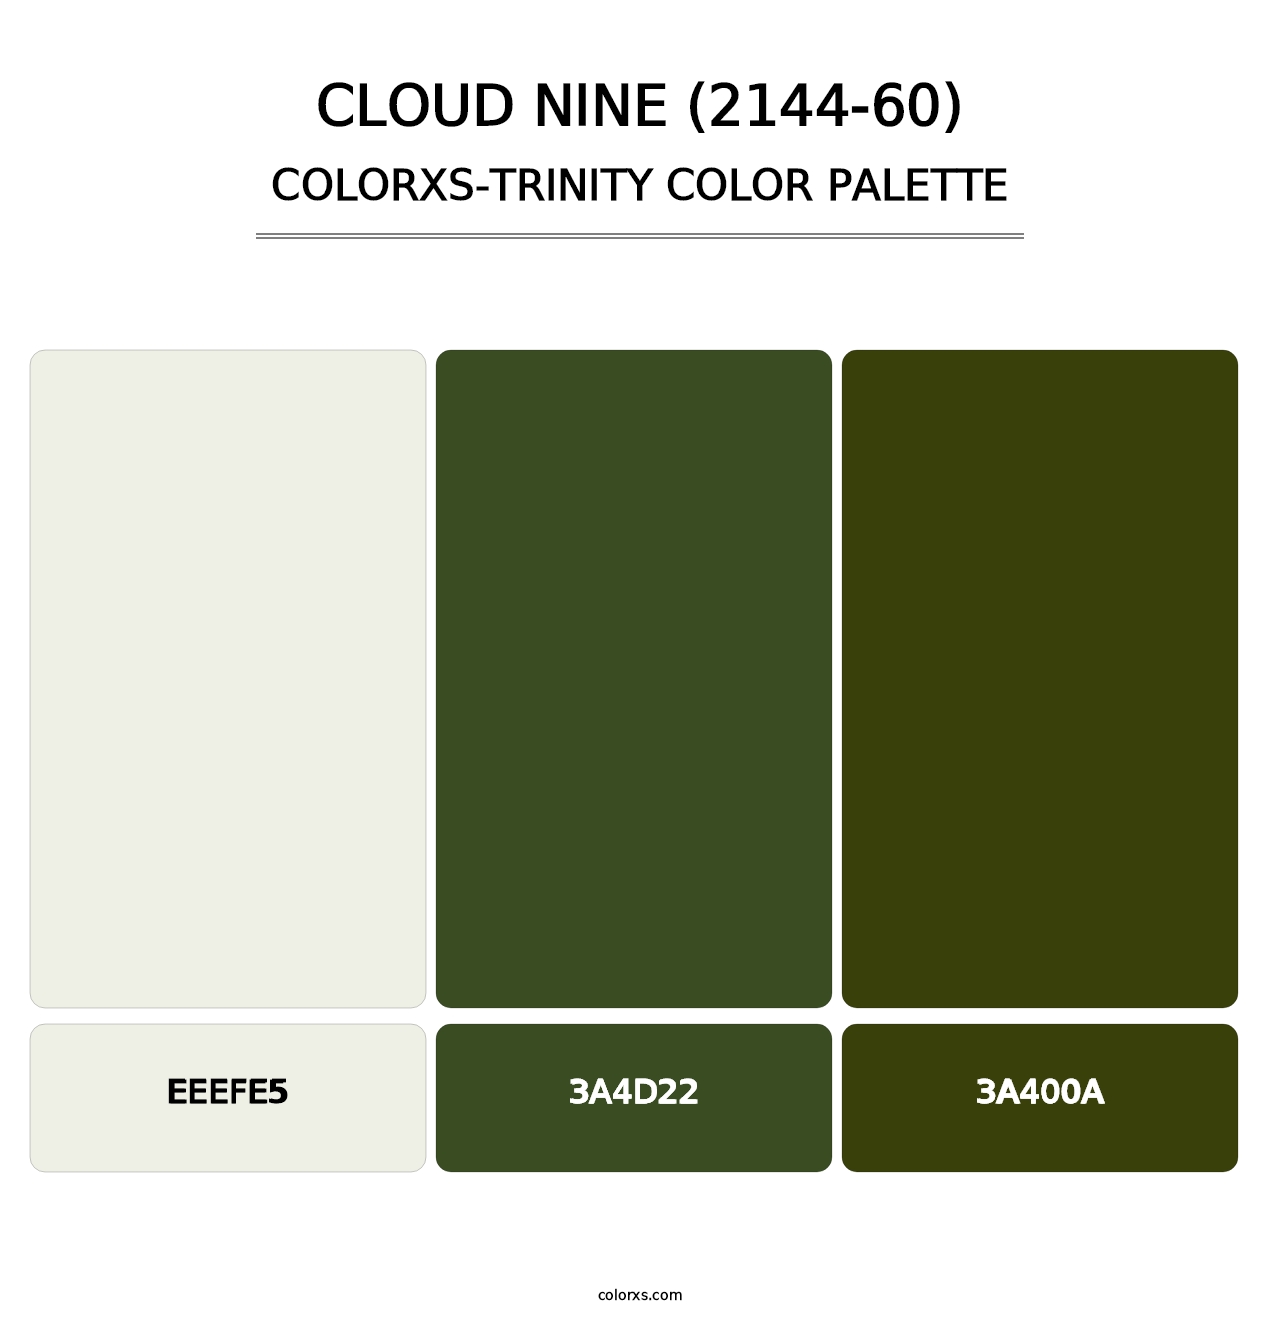 Cloud Nine (2144-60) - Colorxs Trinity Palette